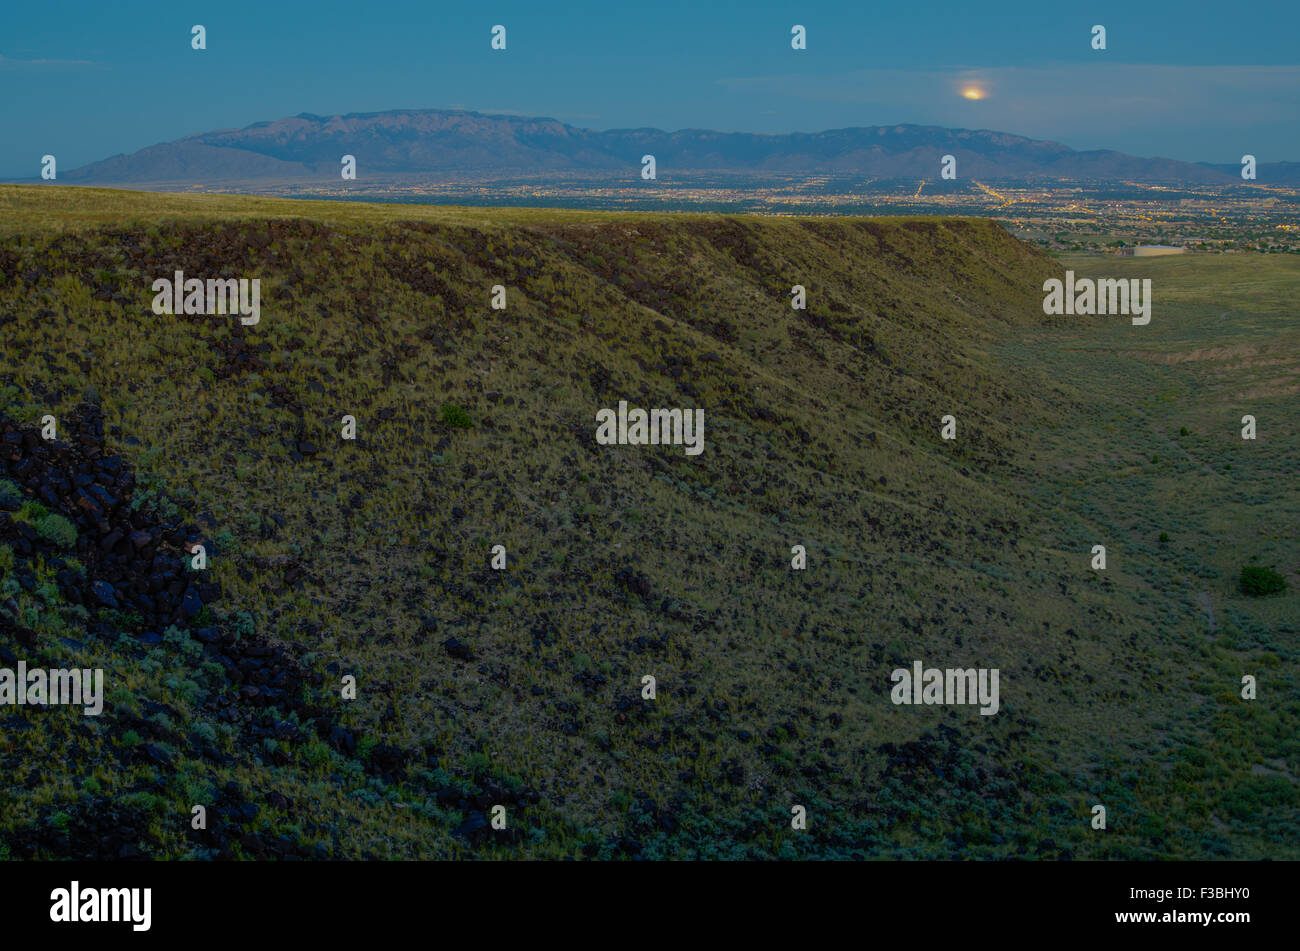 Lunar eclipse over Albuquerque and the Sandia mountains, New Mexico, USA. Stock Photo